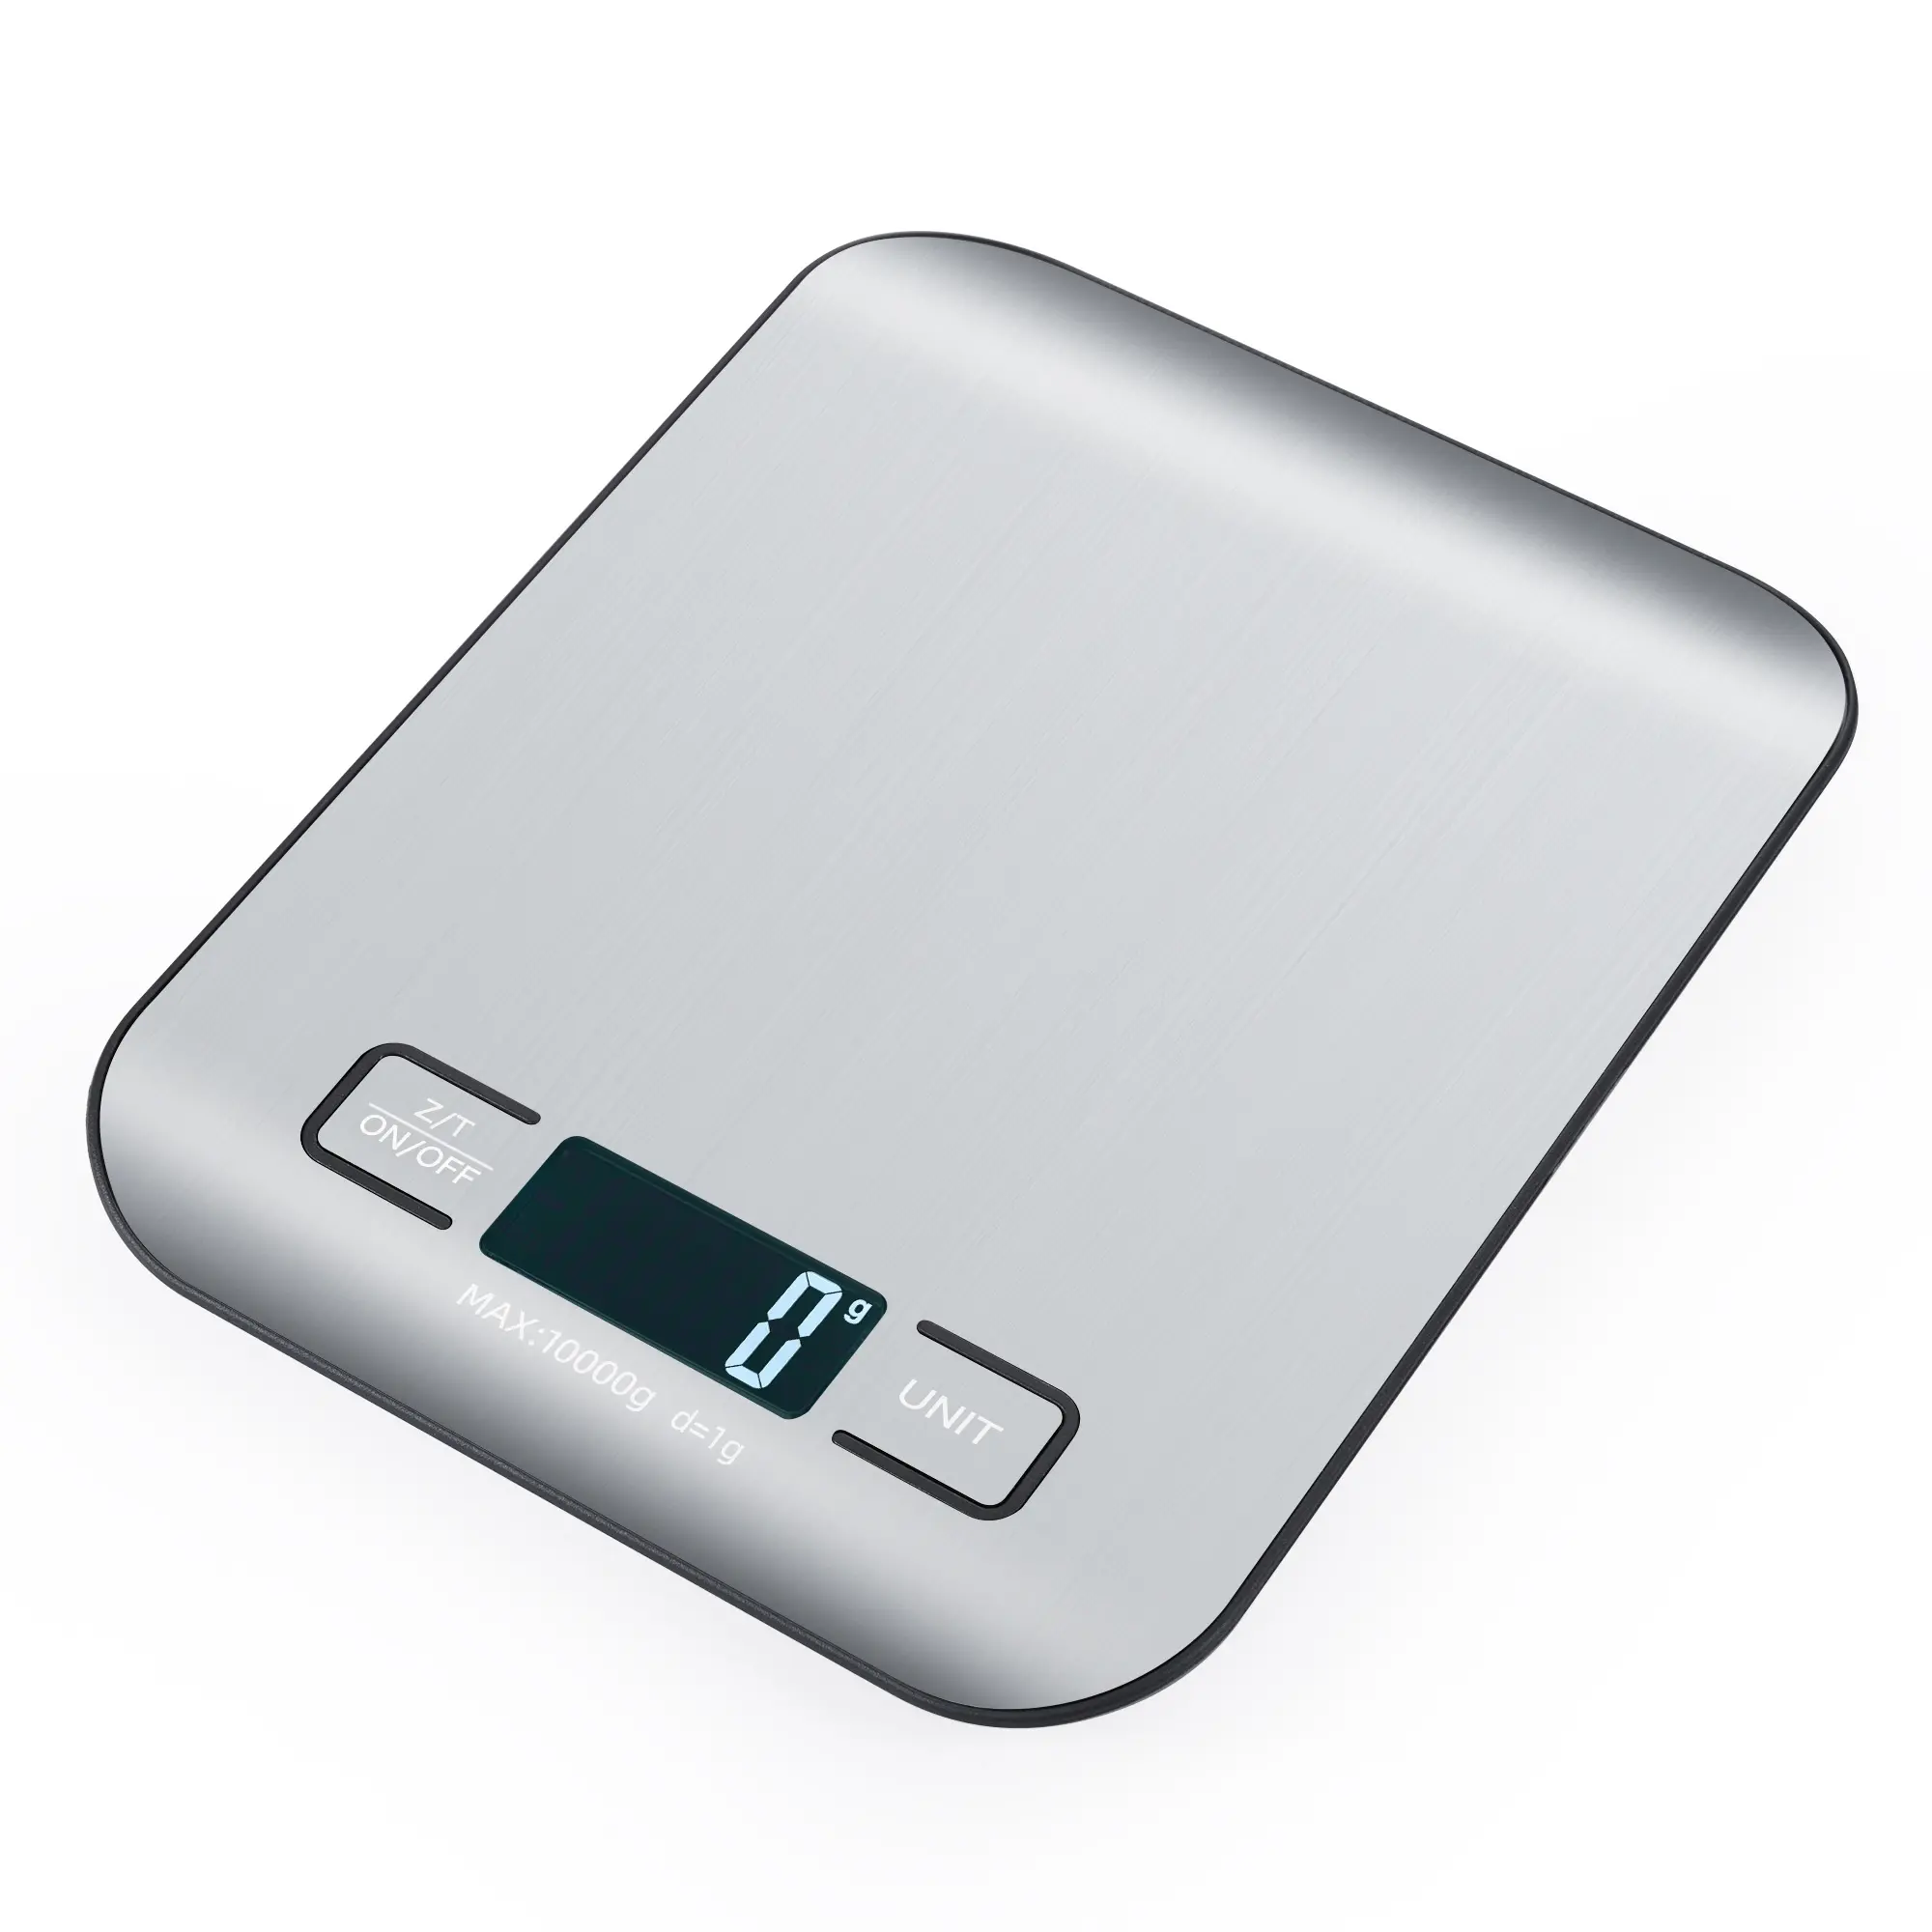 OEM kustom dapat diisi ulang 5kg/10kg persegi panjang tampilan LCD timbangan dapur 10kg kapasitas timbangan makanan Digital